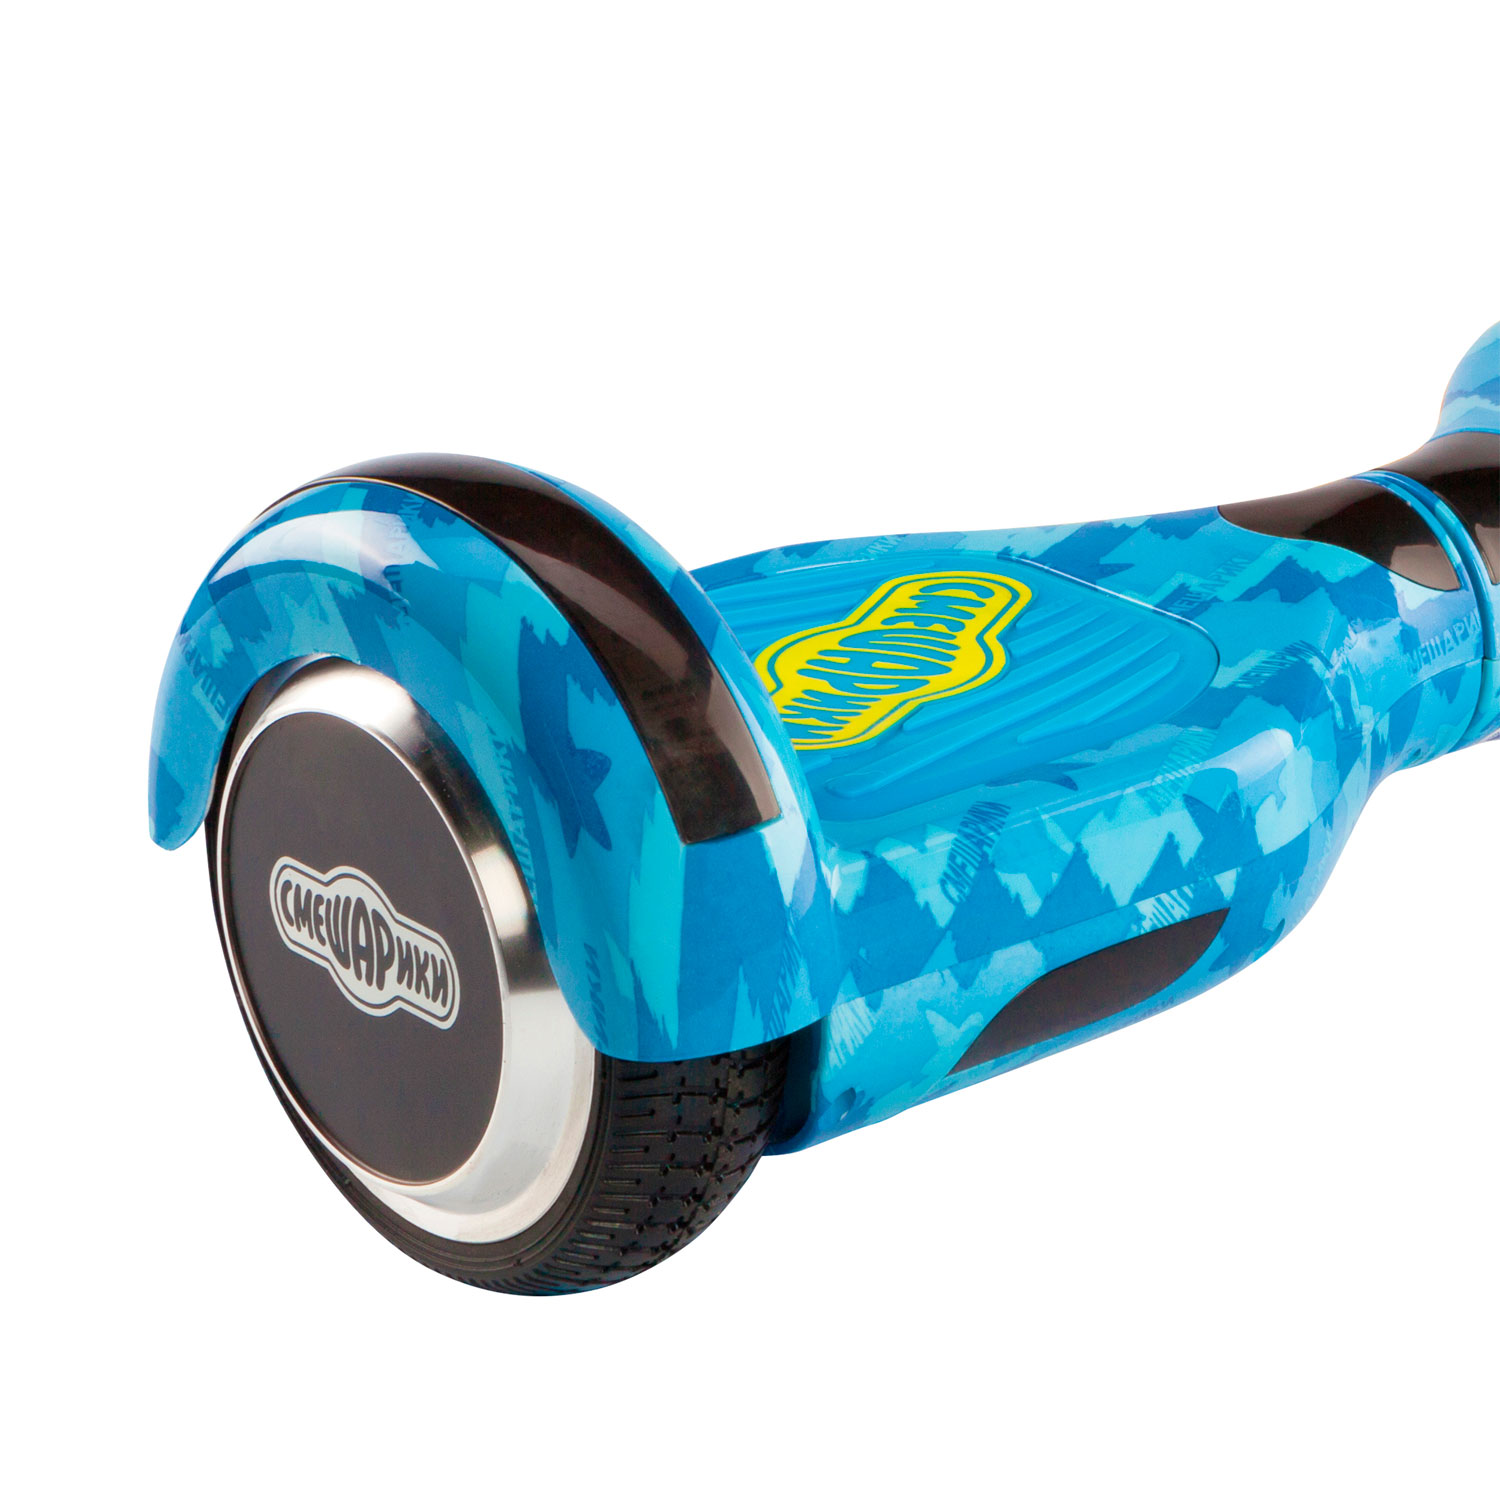 Детский гироскутер СМЕШАРИКИ 6.5 голубой + комплект защиты 